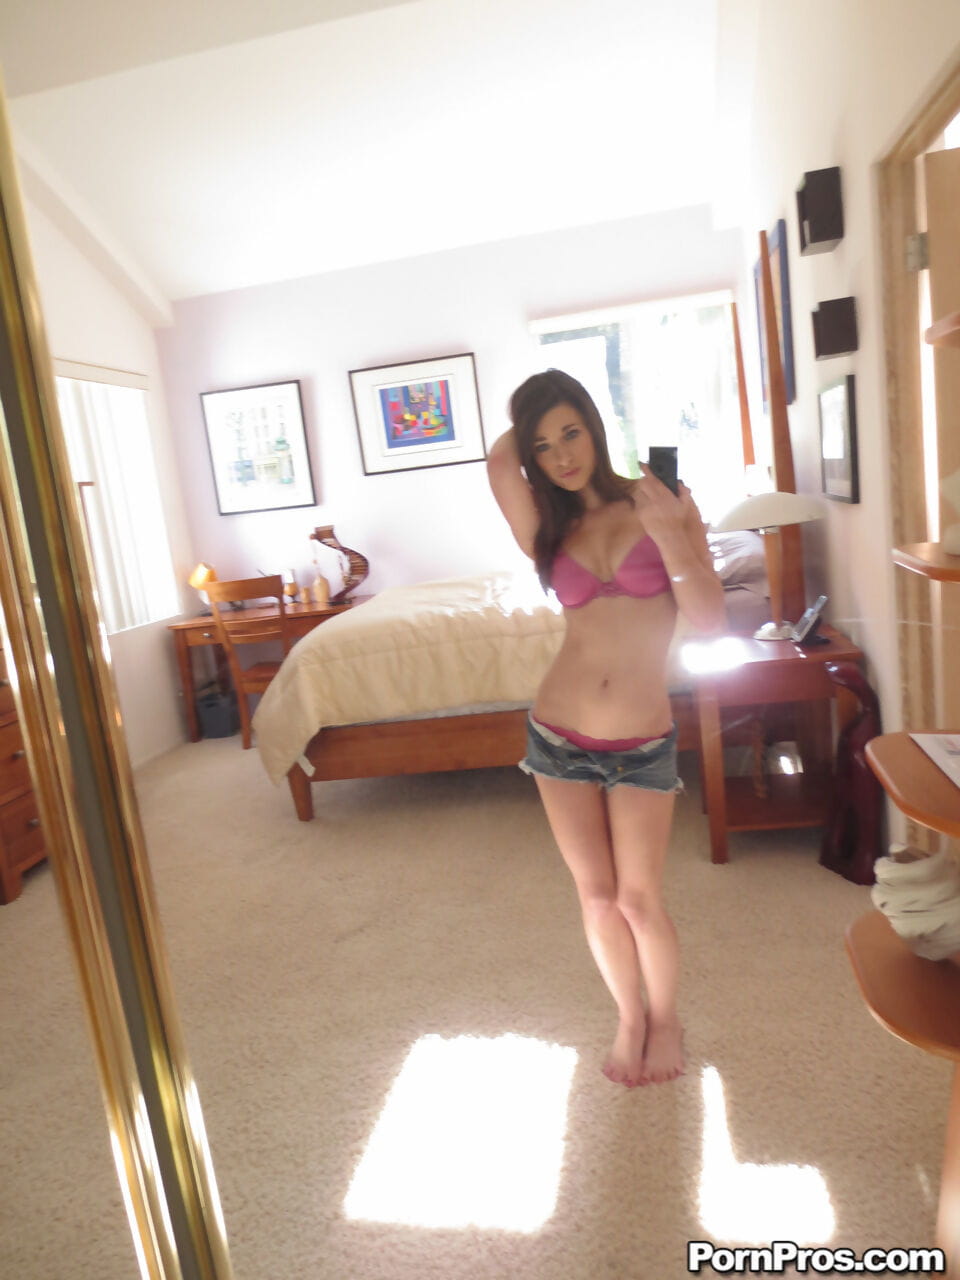 Lacey channing prangt Ihr Natürliche Titten bekommt Nackt und Nimmt sexy selfies